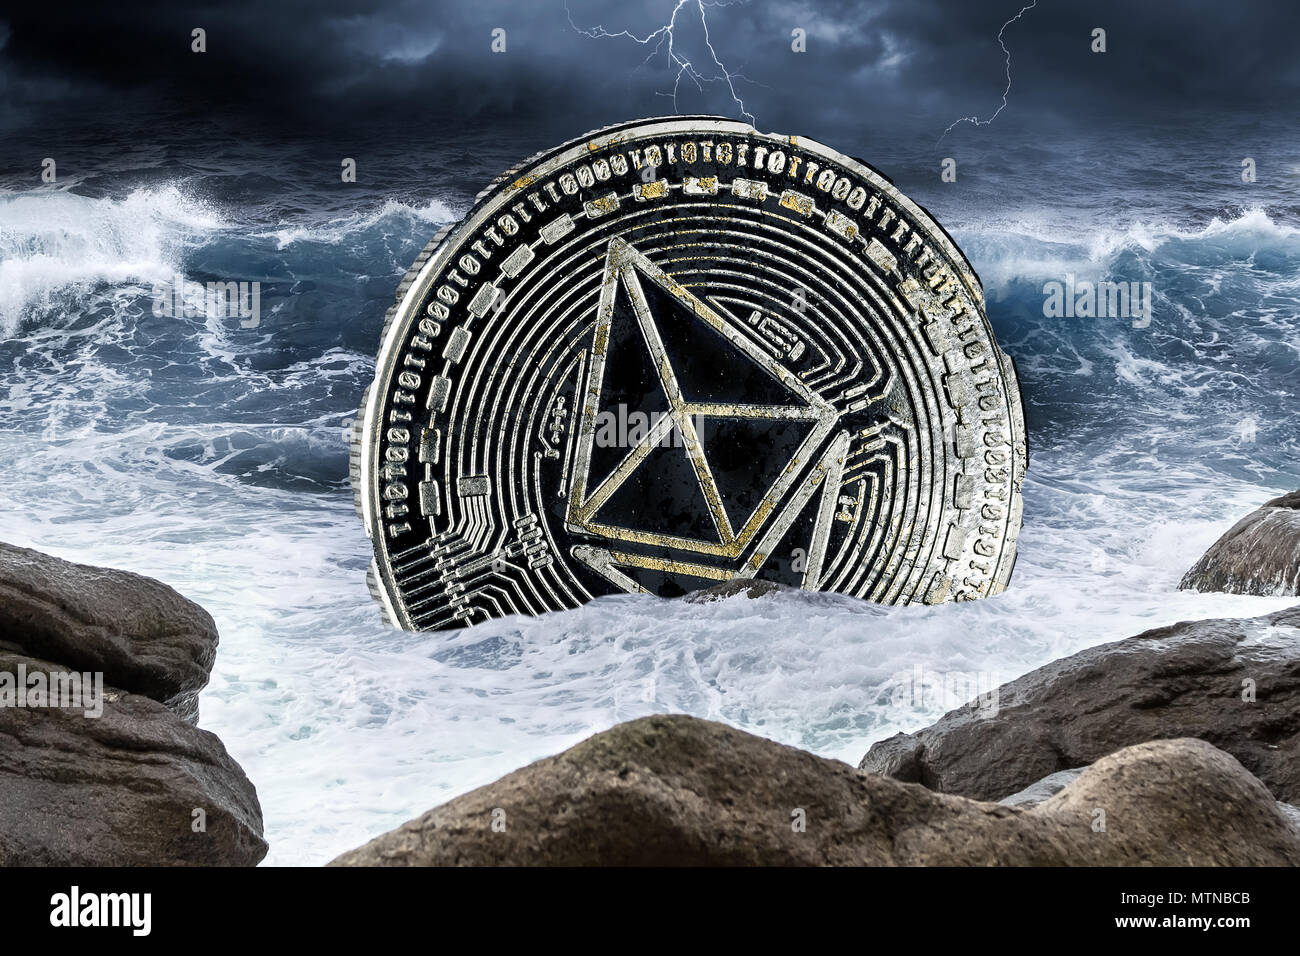 Des astraleums Äther Krise crypto Münze Währung Finanzen Markt absturz Konzept im Ozean Gewitter Hintergrund Stockfoto